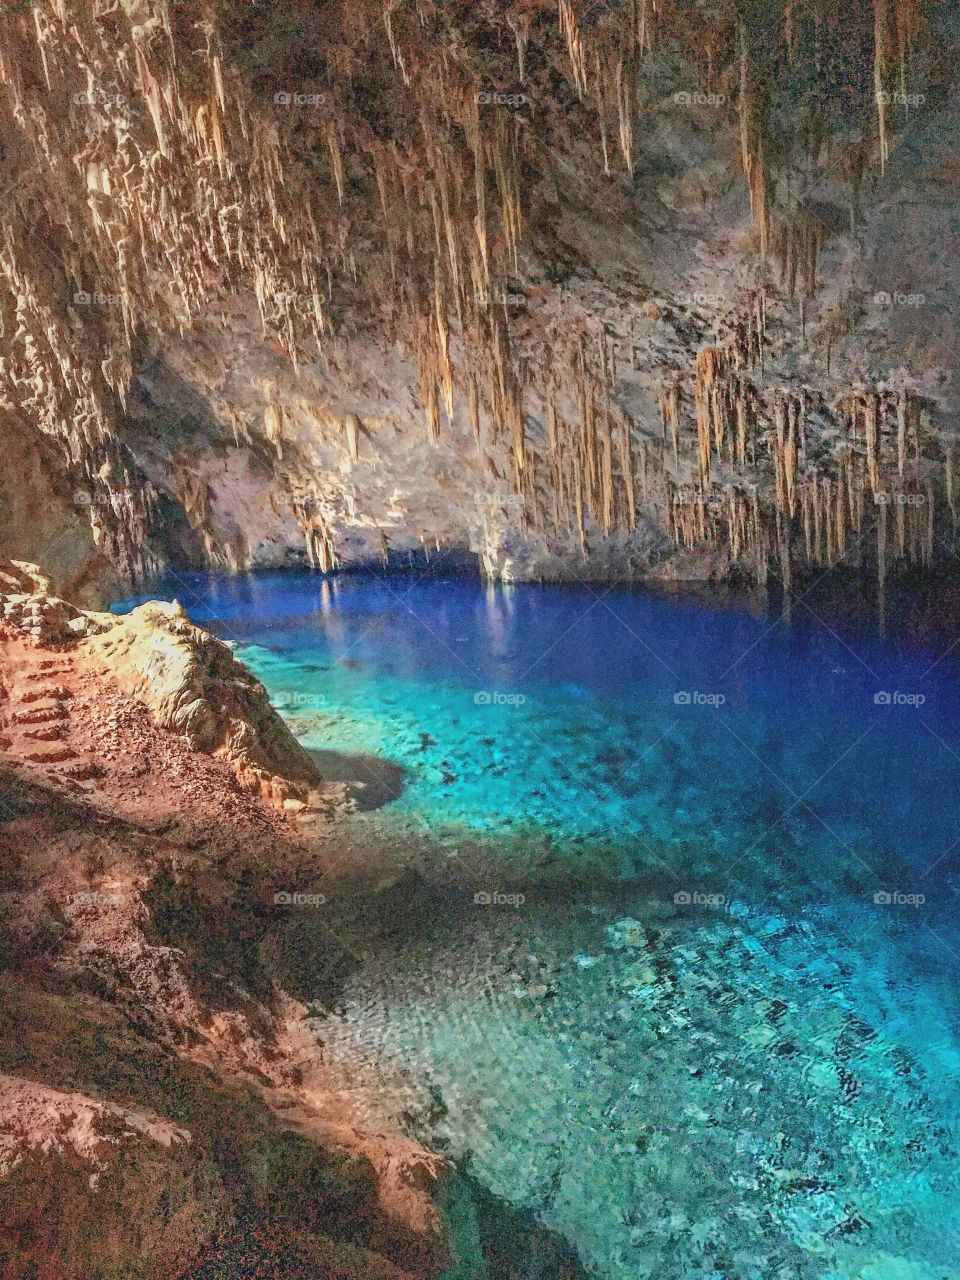 Caverna esculpida pela própria mãe natureza, essa foto foi tirada em uma pequena cidade chamada Bonito no Brasil. 